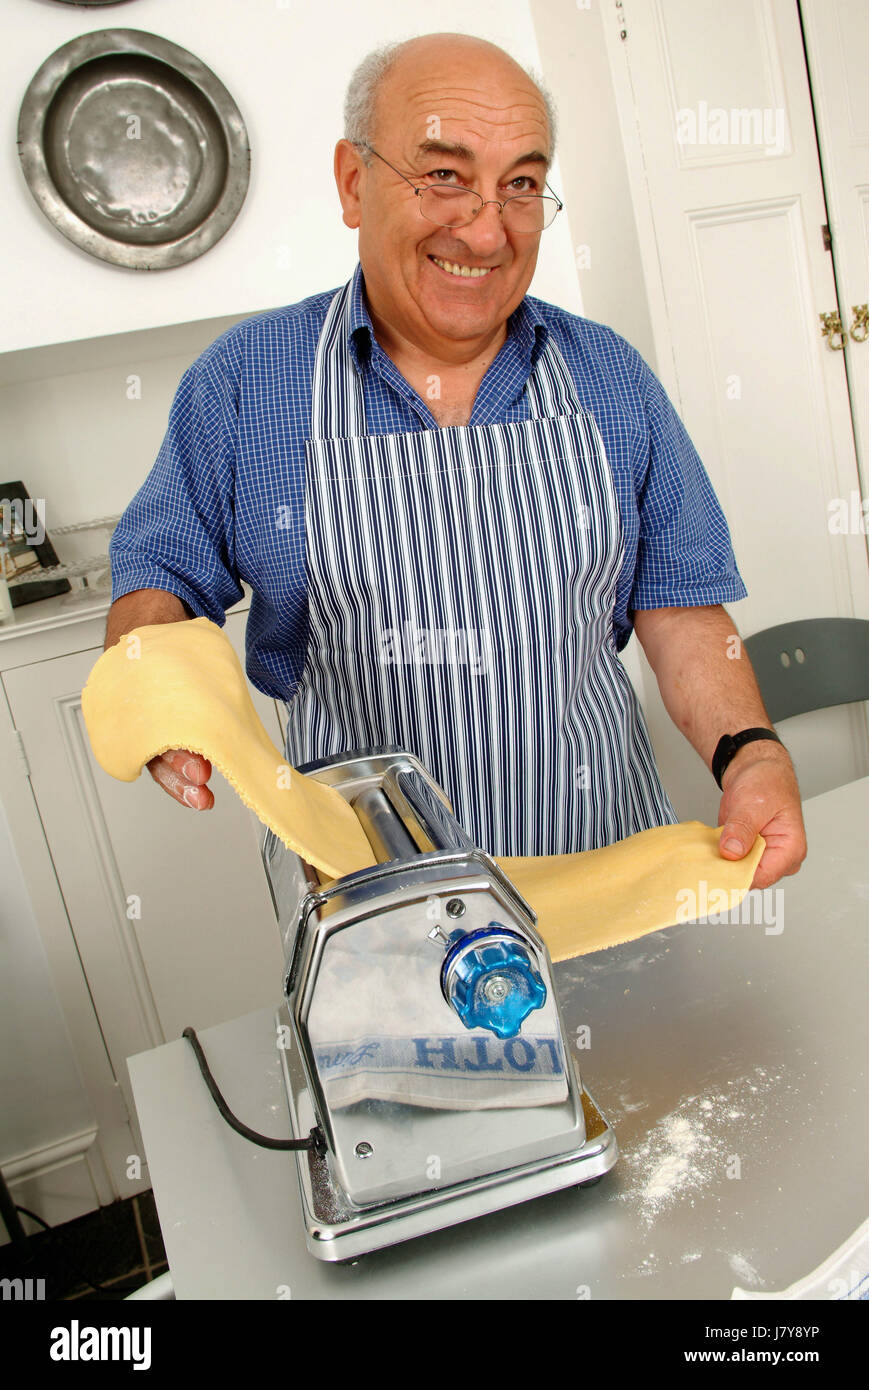 El chef italiano Franco Taruschio hacer hojas de pasta en la cocina de su casa, usando una pasta maker. Foto de stock